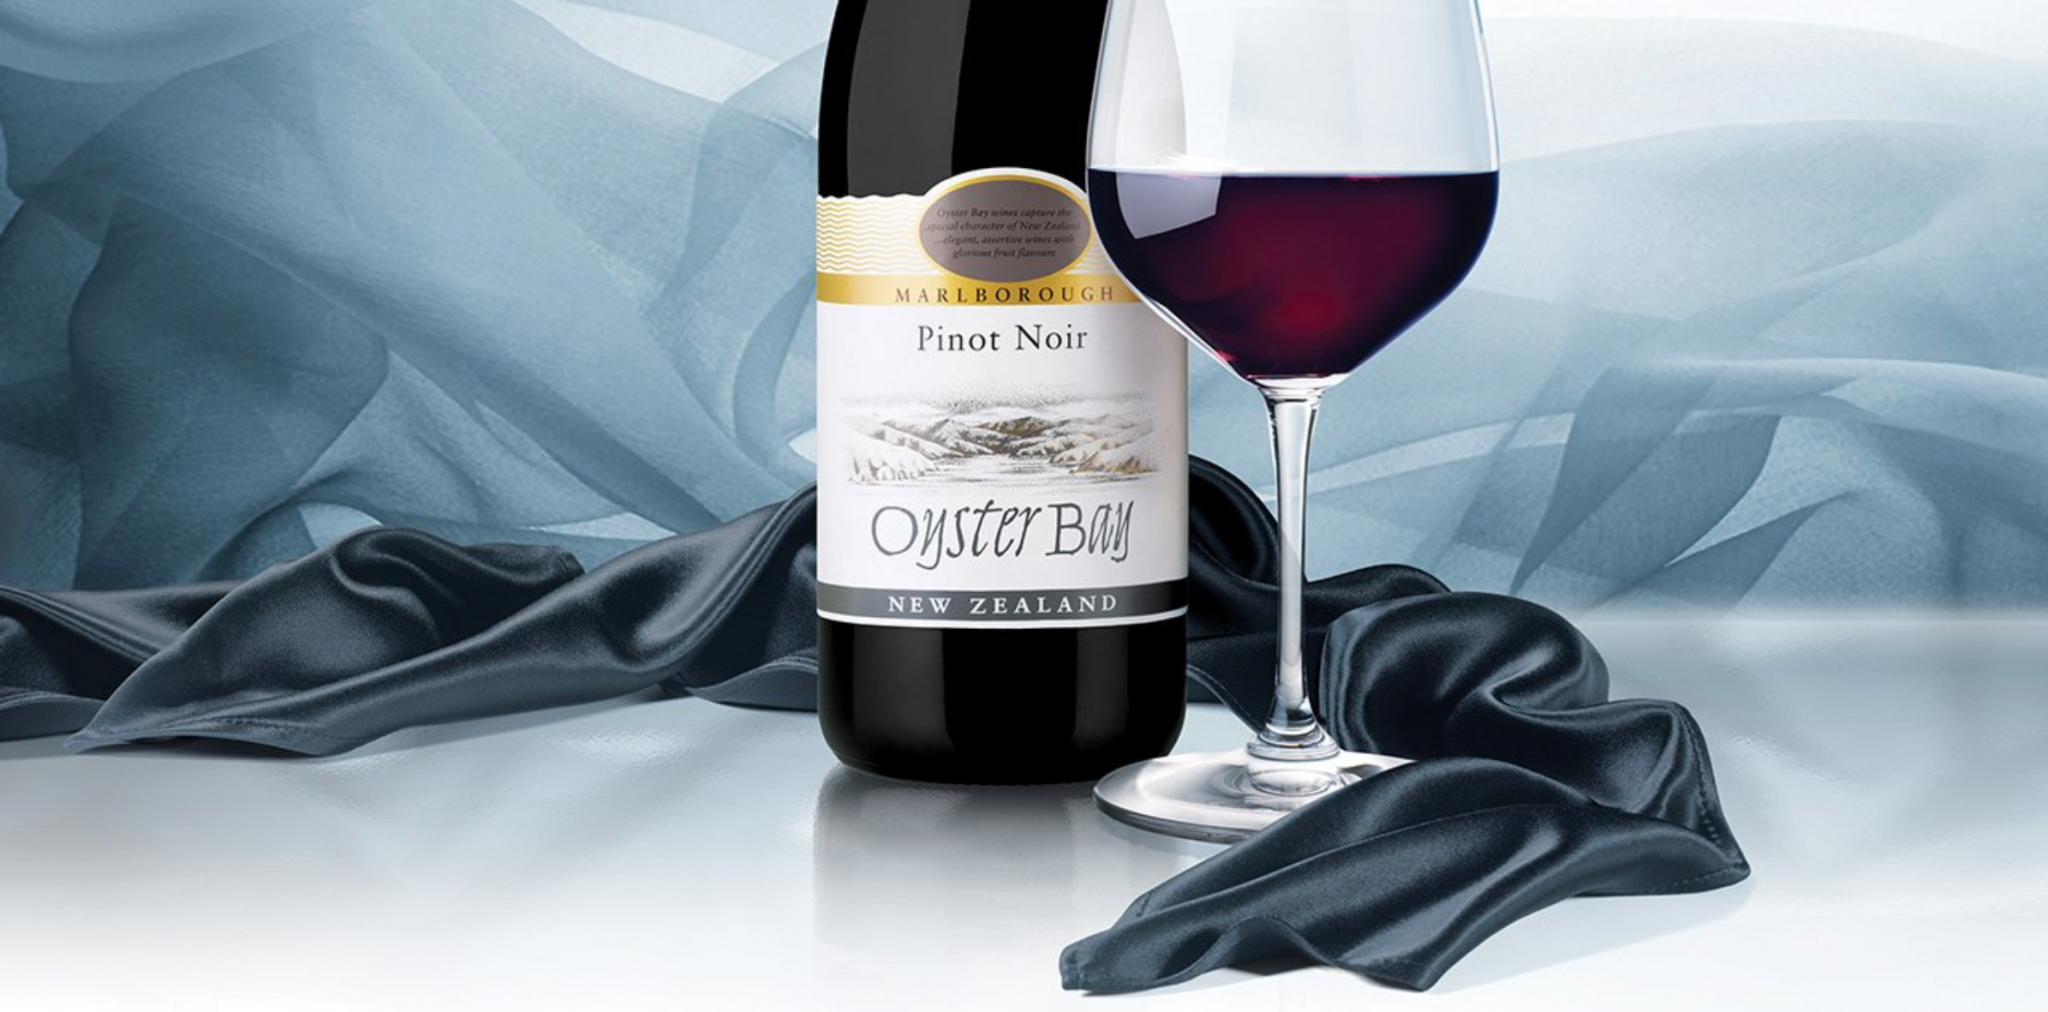 2018 Oyster Bay Pinot Noir